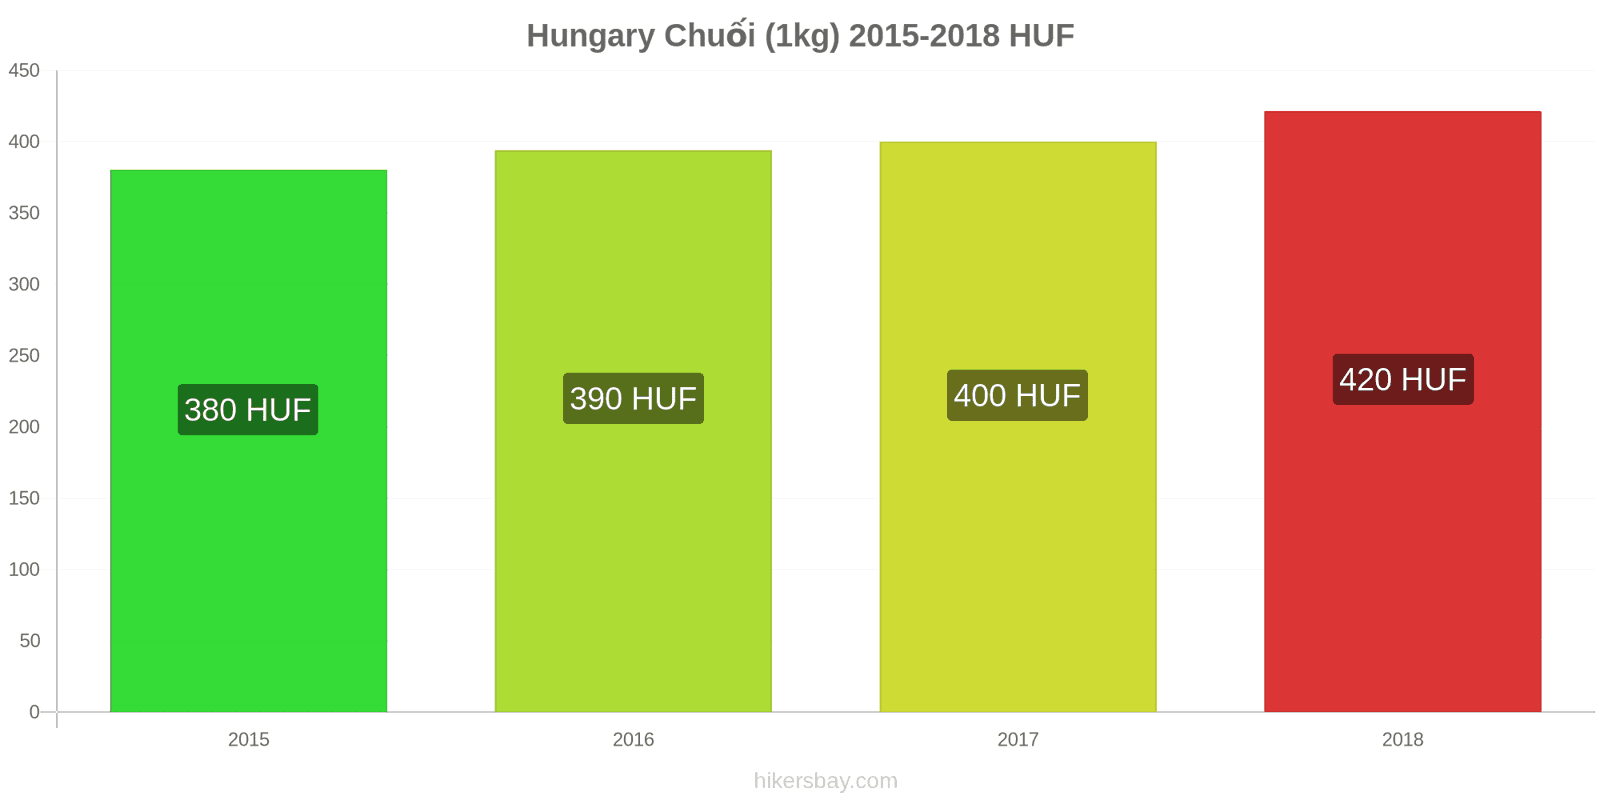 Hungary thay đổi giá cả Chuối (1kg) hikersbay.com